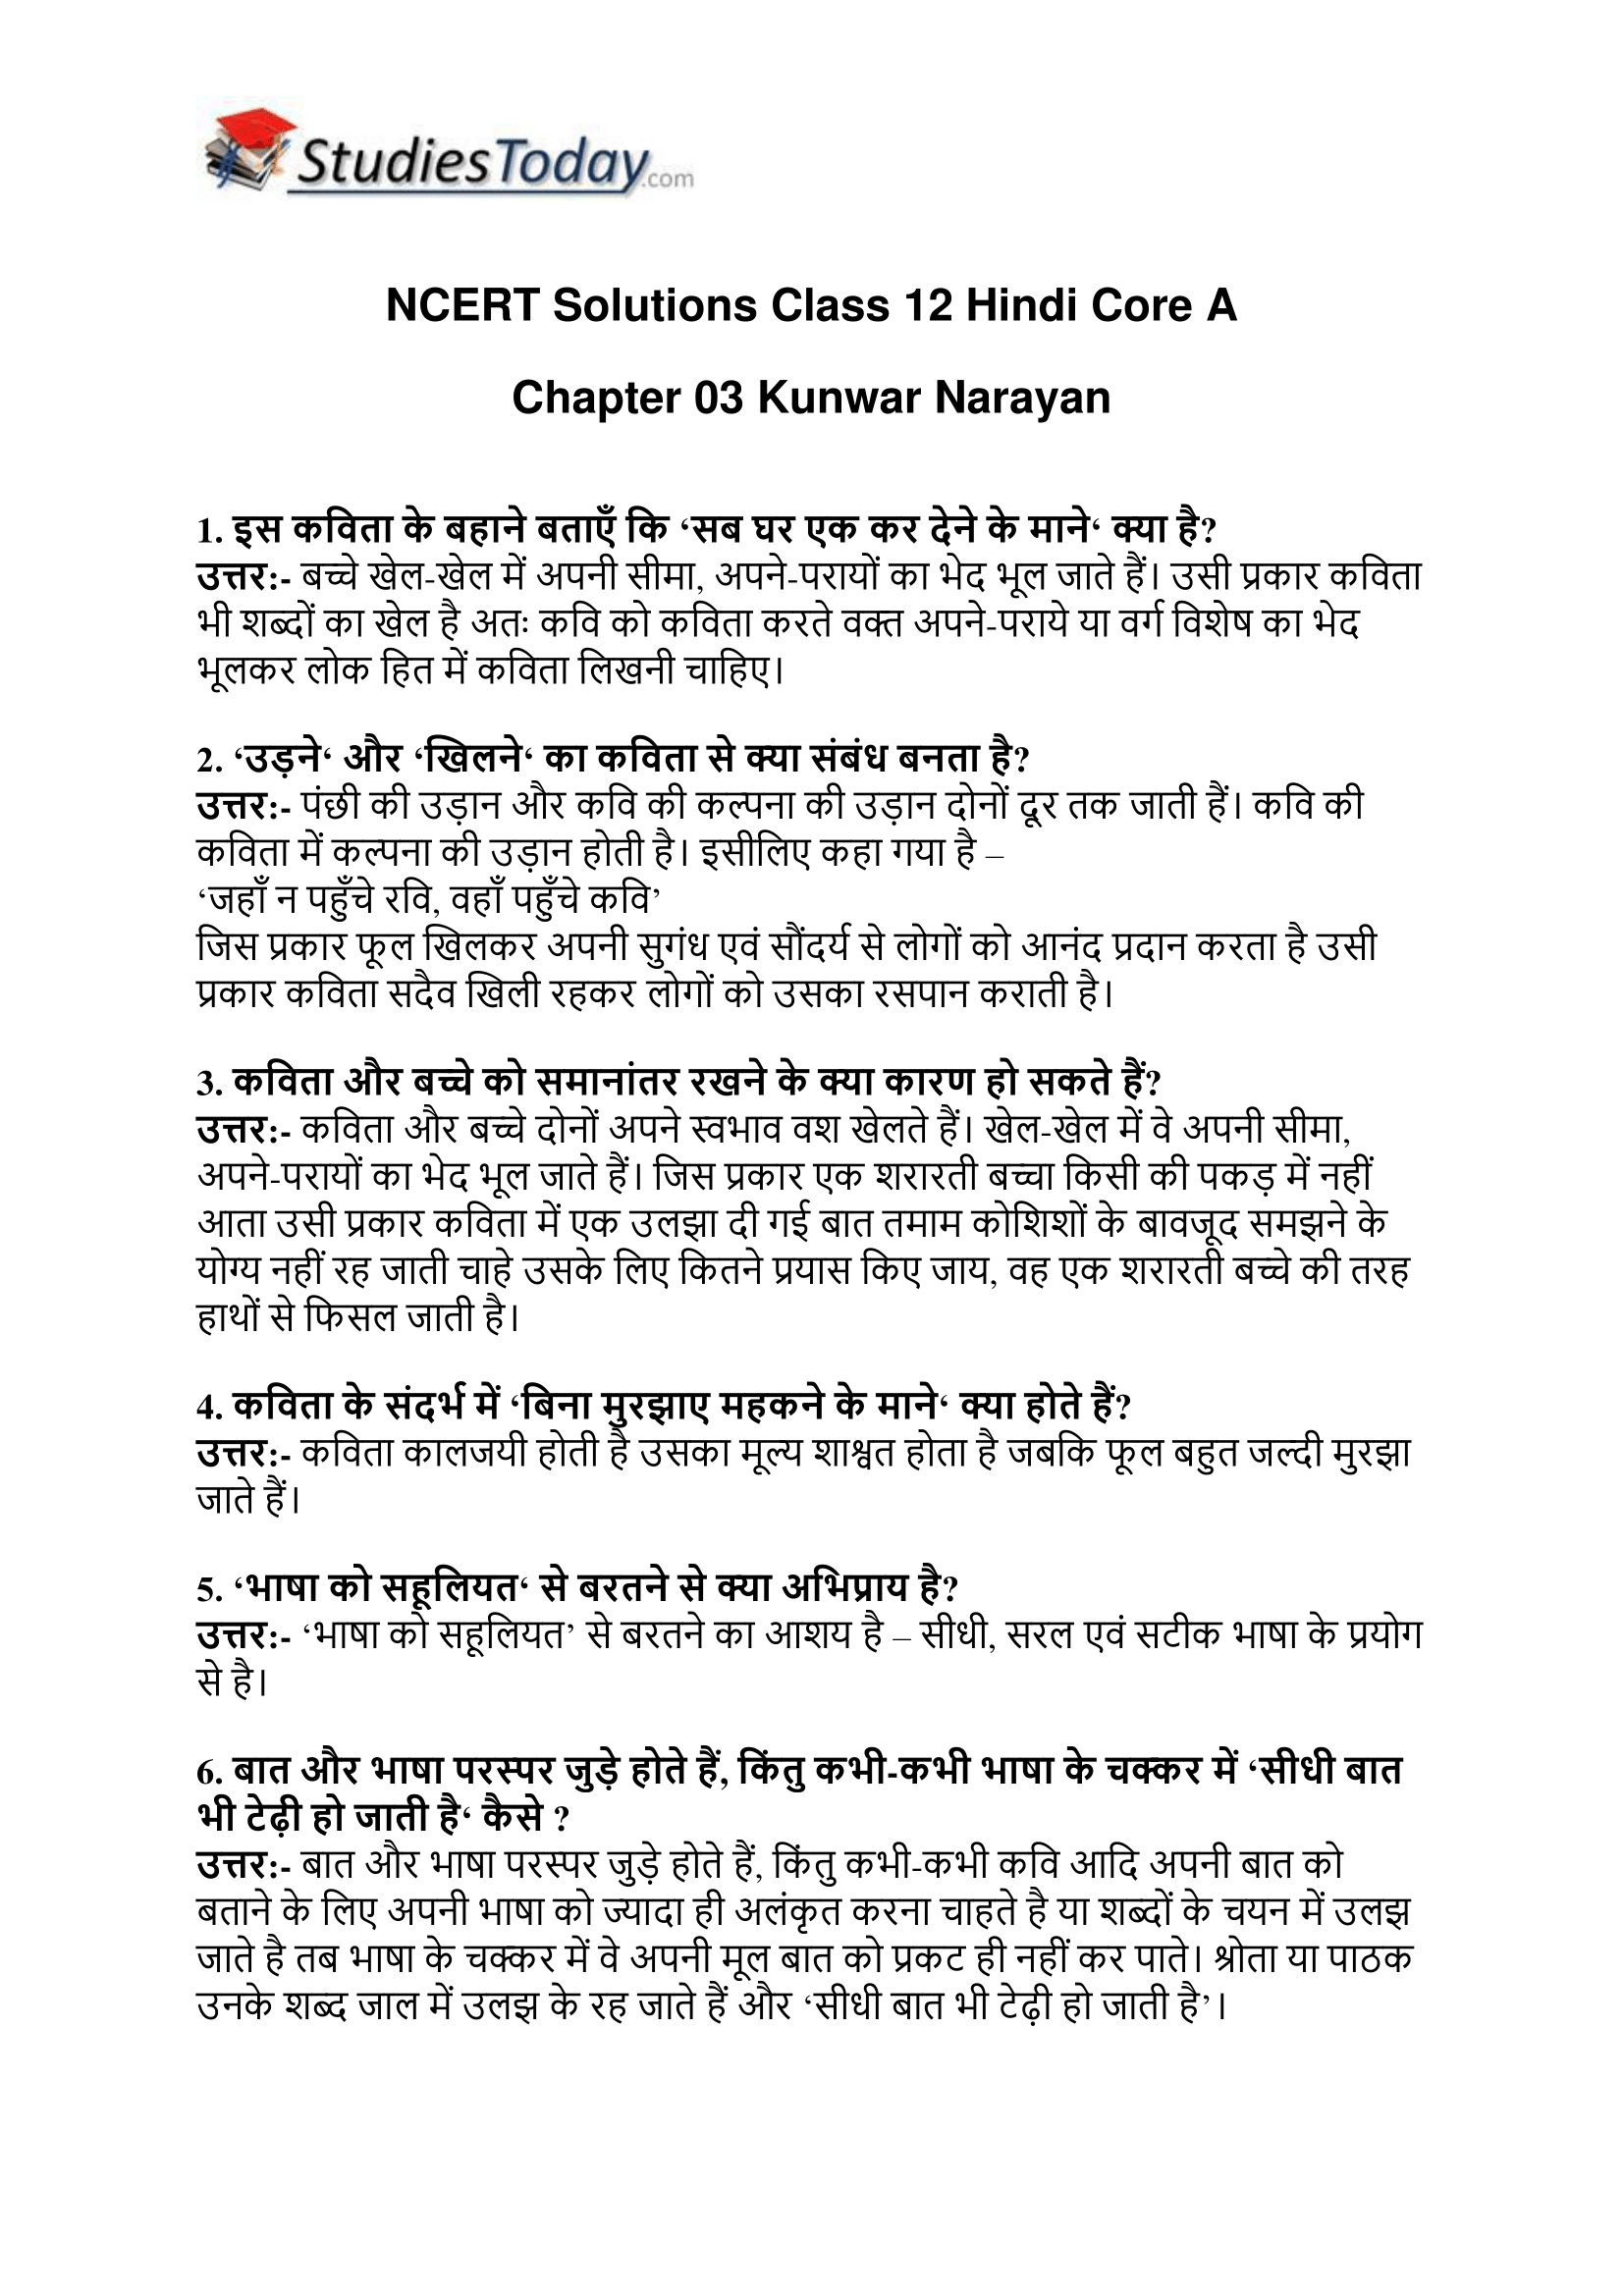 ncert-solutions-class-12-hindi-core-a-chapter-3-kunwar-narayan-1